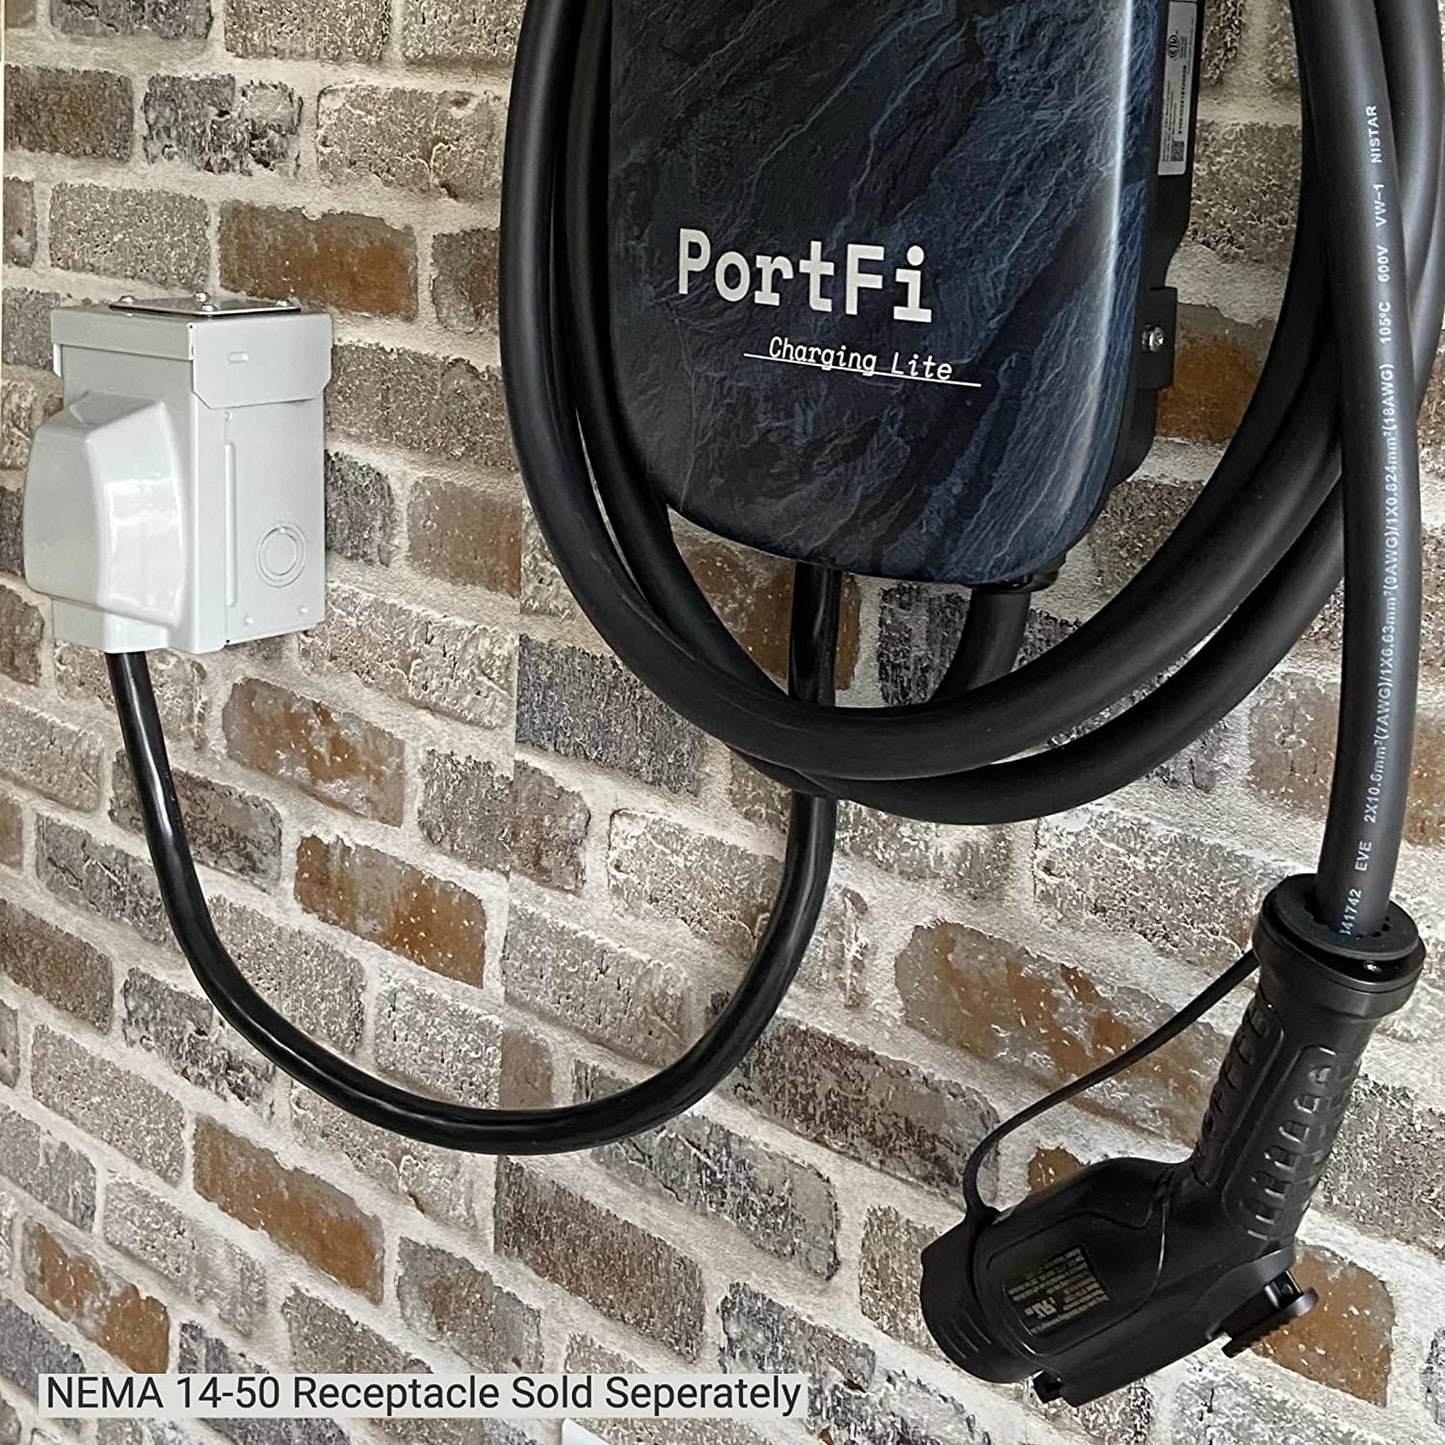 PortFi Estación de carga Smart Level 2 para vehículos eléctricos (EV), certificado de seguridad, interior/exterior, enchufe NEMA 14-50, cargador L2 EVSE/EV (Wi-Fi, 40 A)